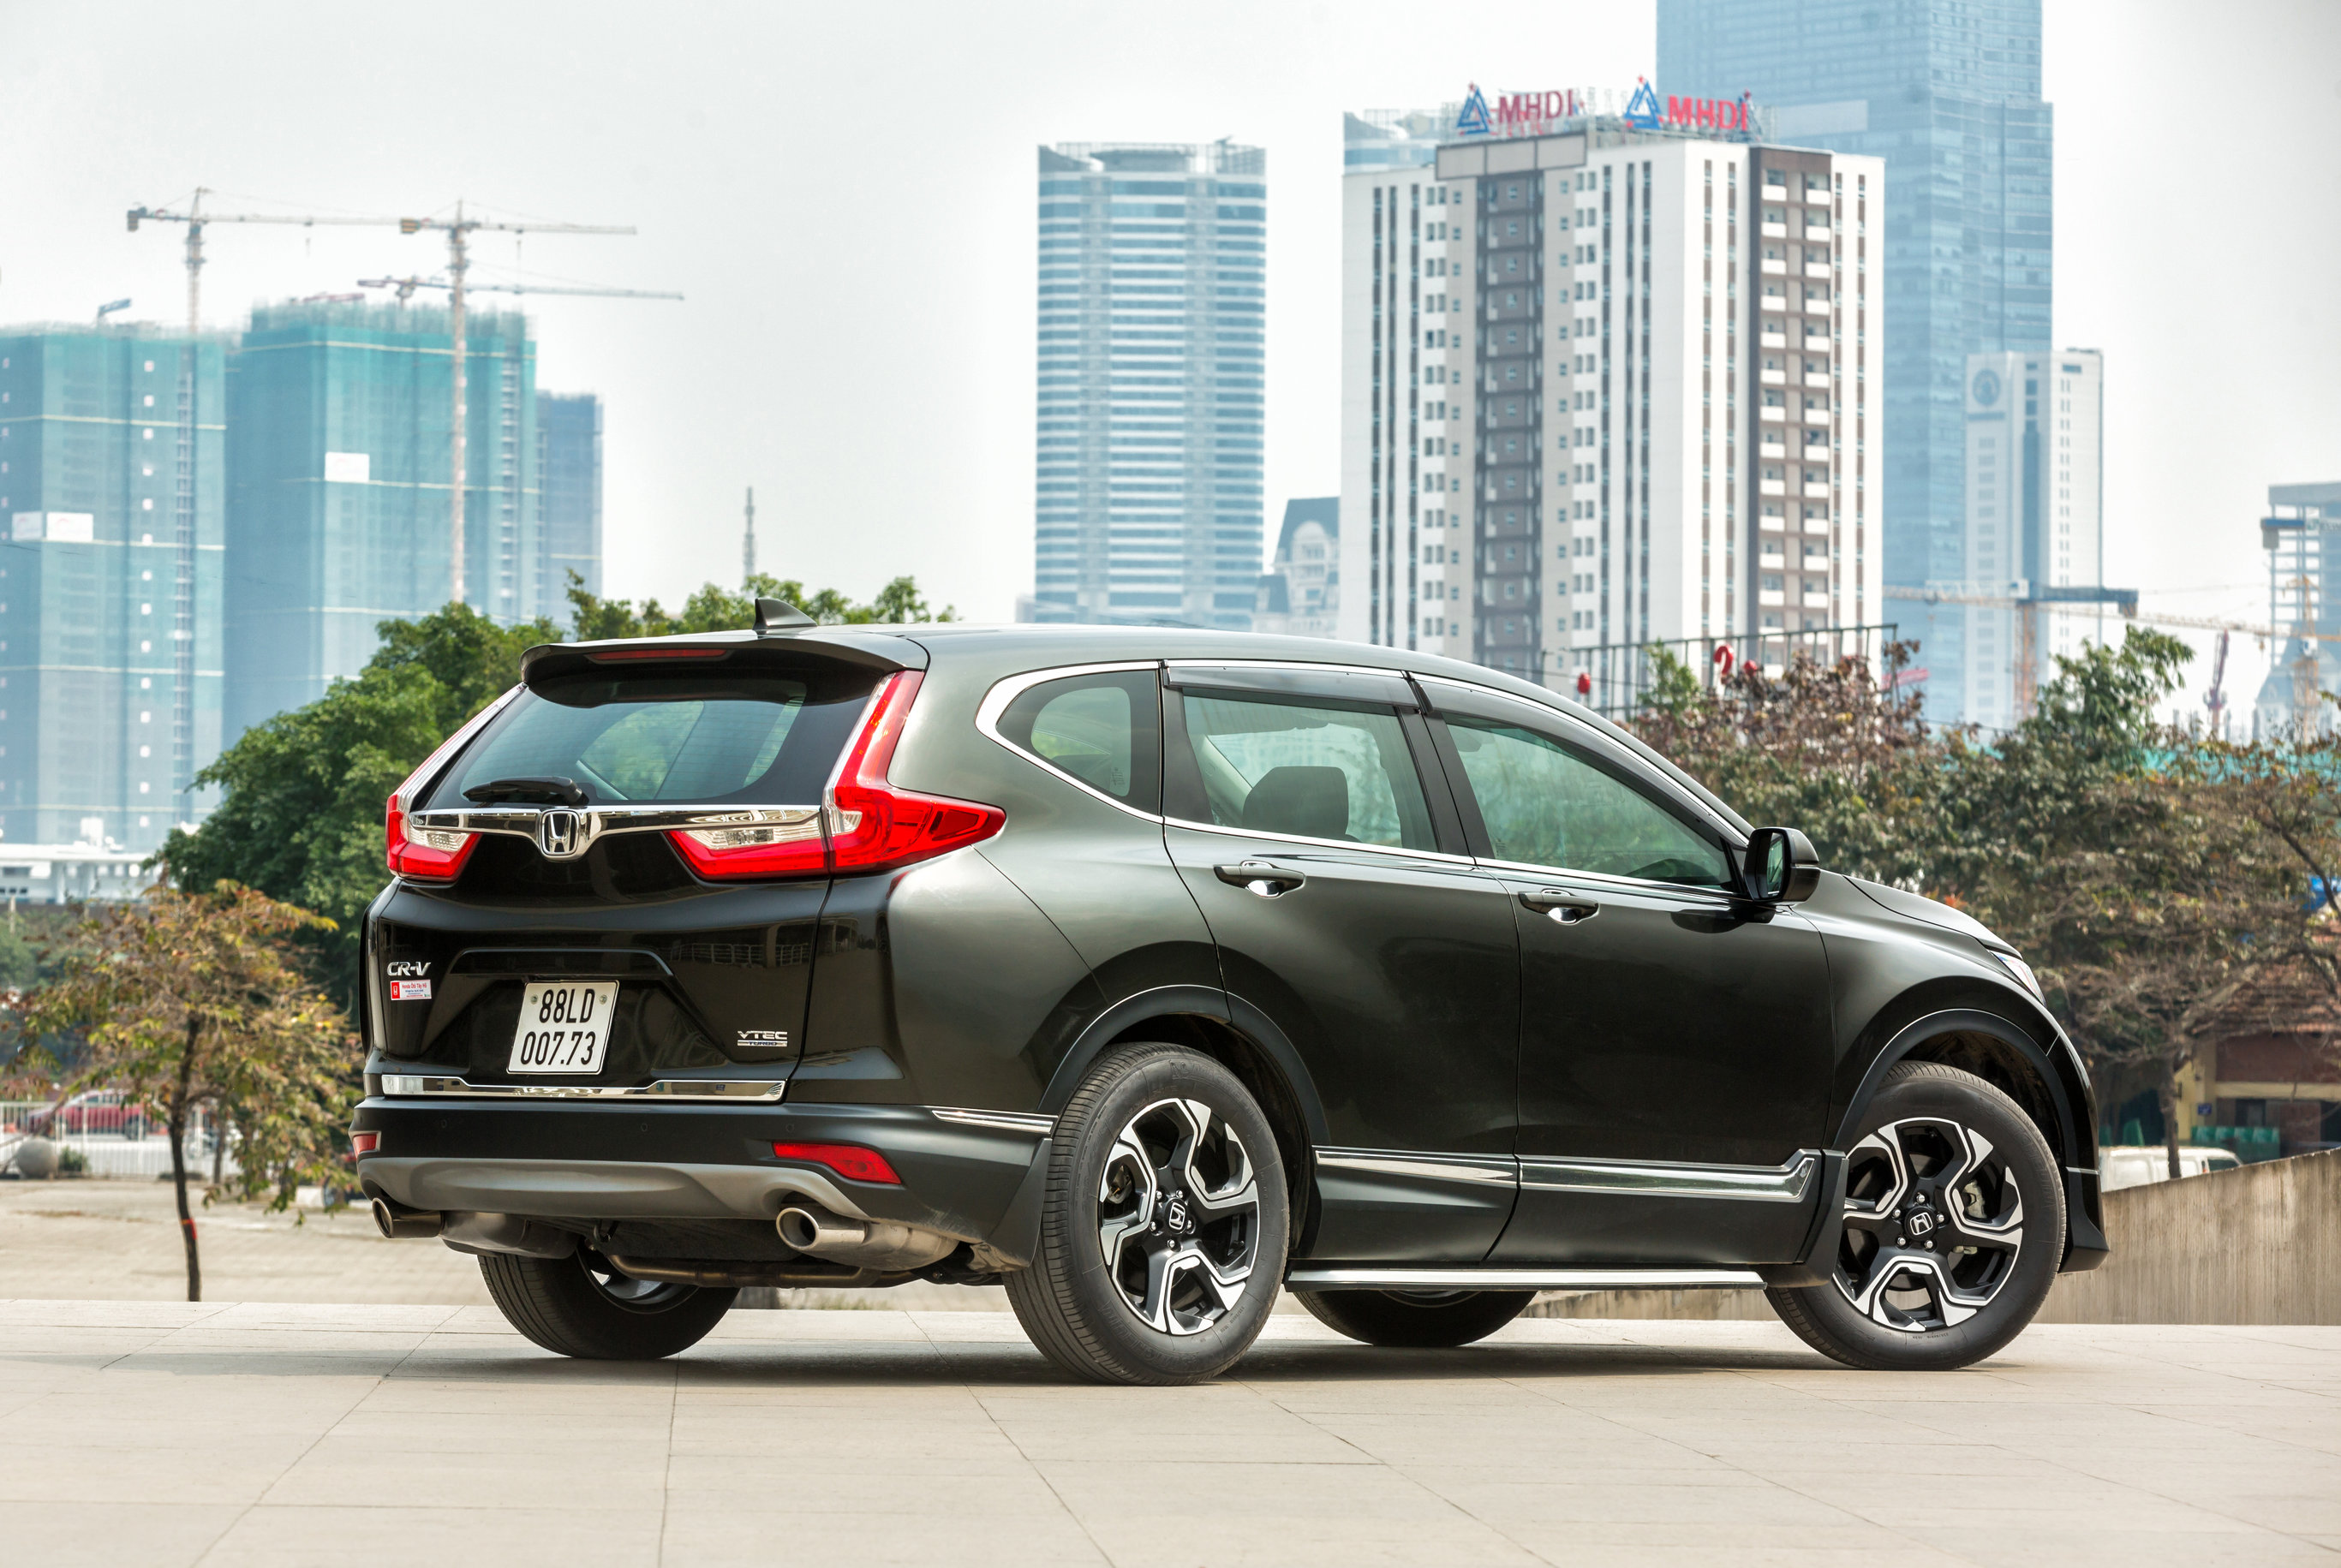 Honda công bố giá bán hàng loạt mẫu ô tô nhập khẩu, giá chỉ từ hơn 500 triệu đồng